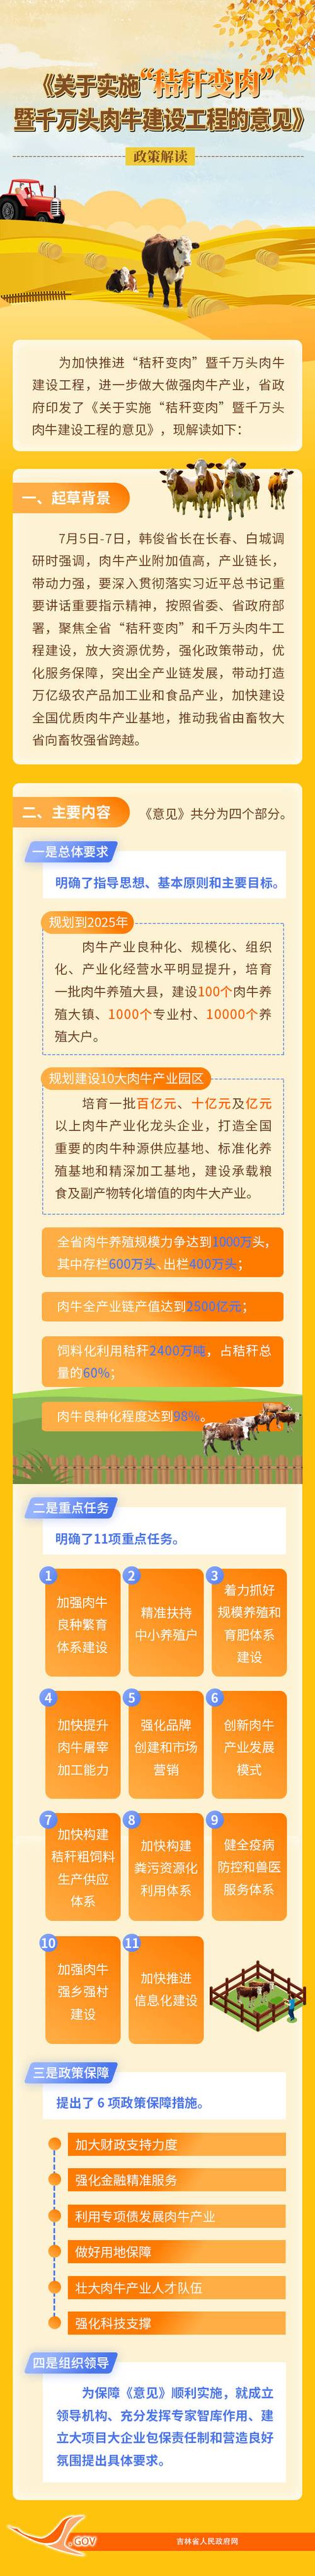 图解《吉林省人民政府办公厅关于实施"秸秆变肉"暨千万头肉牛建设工程